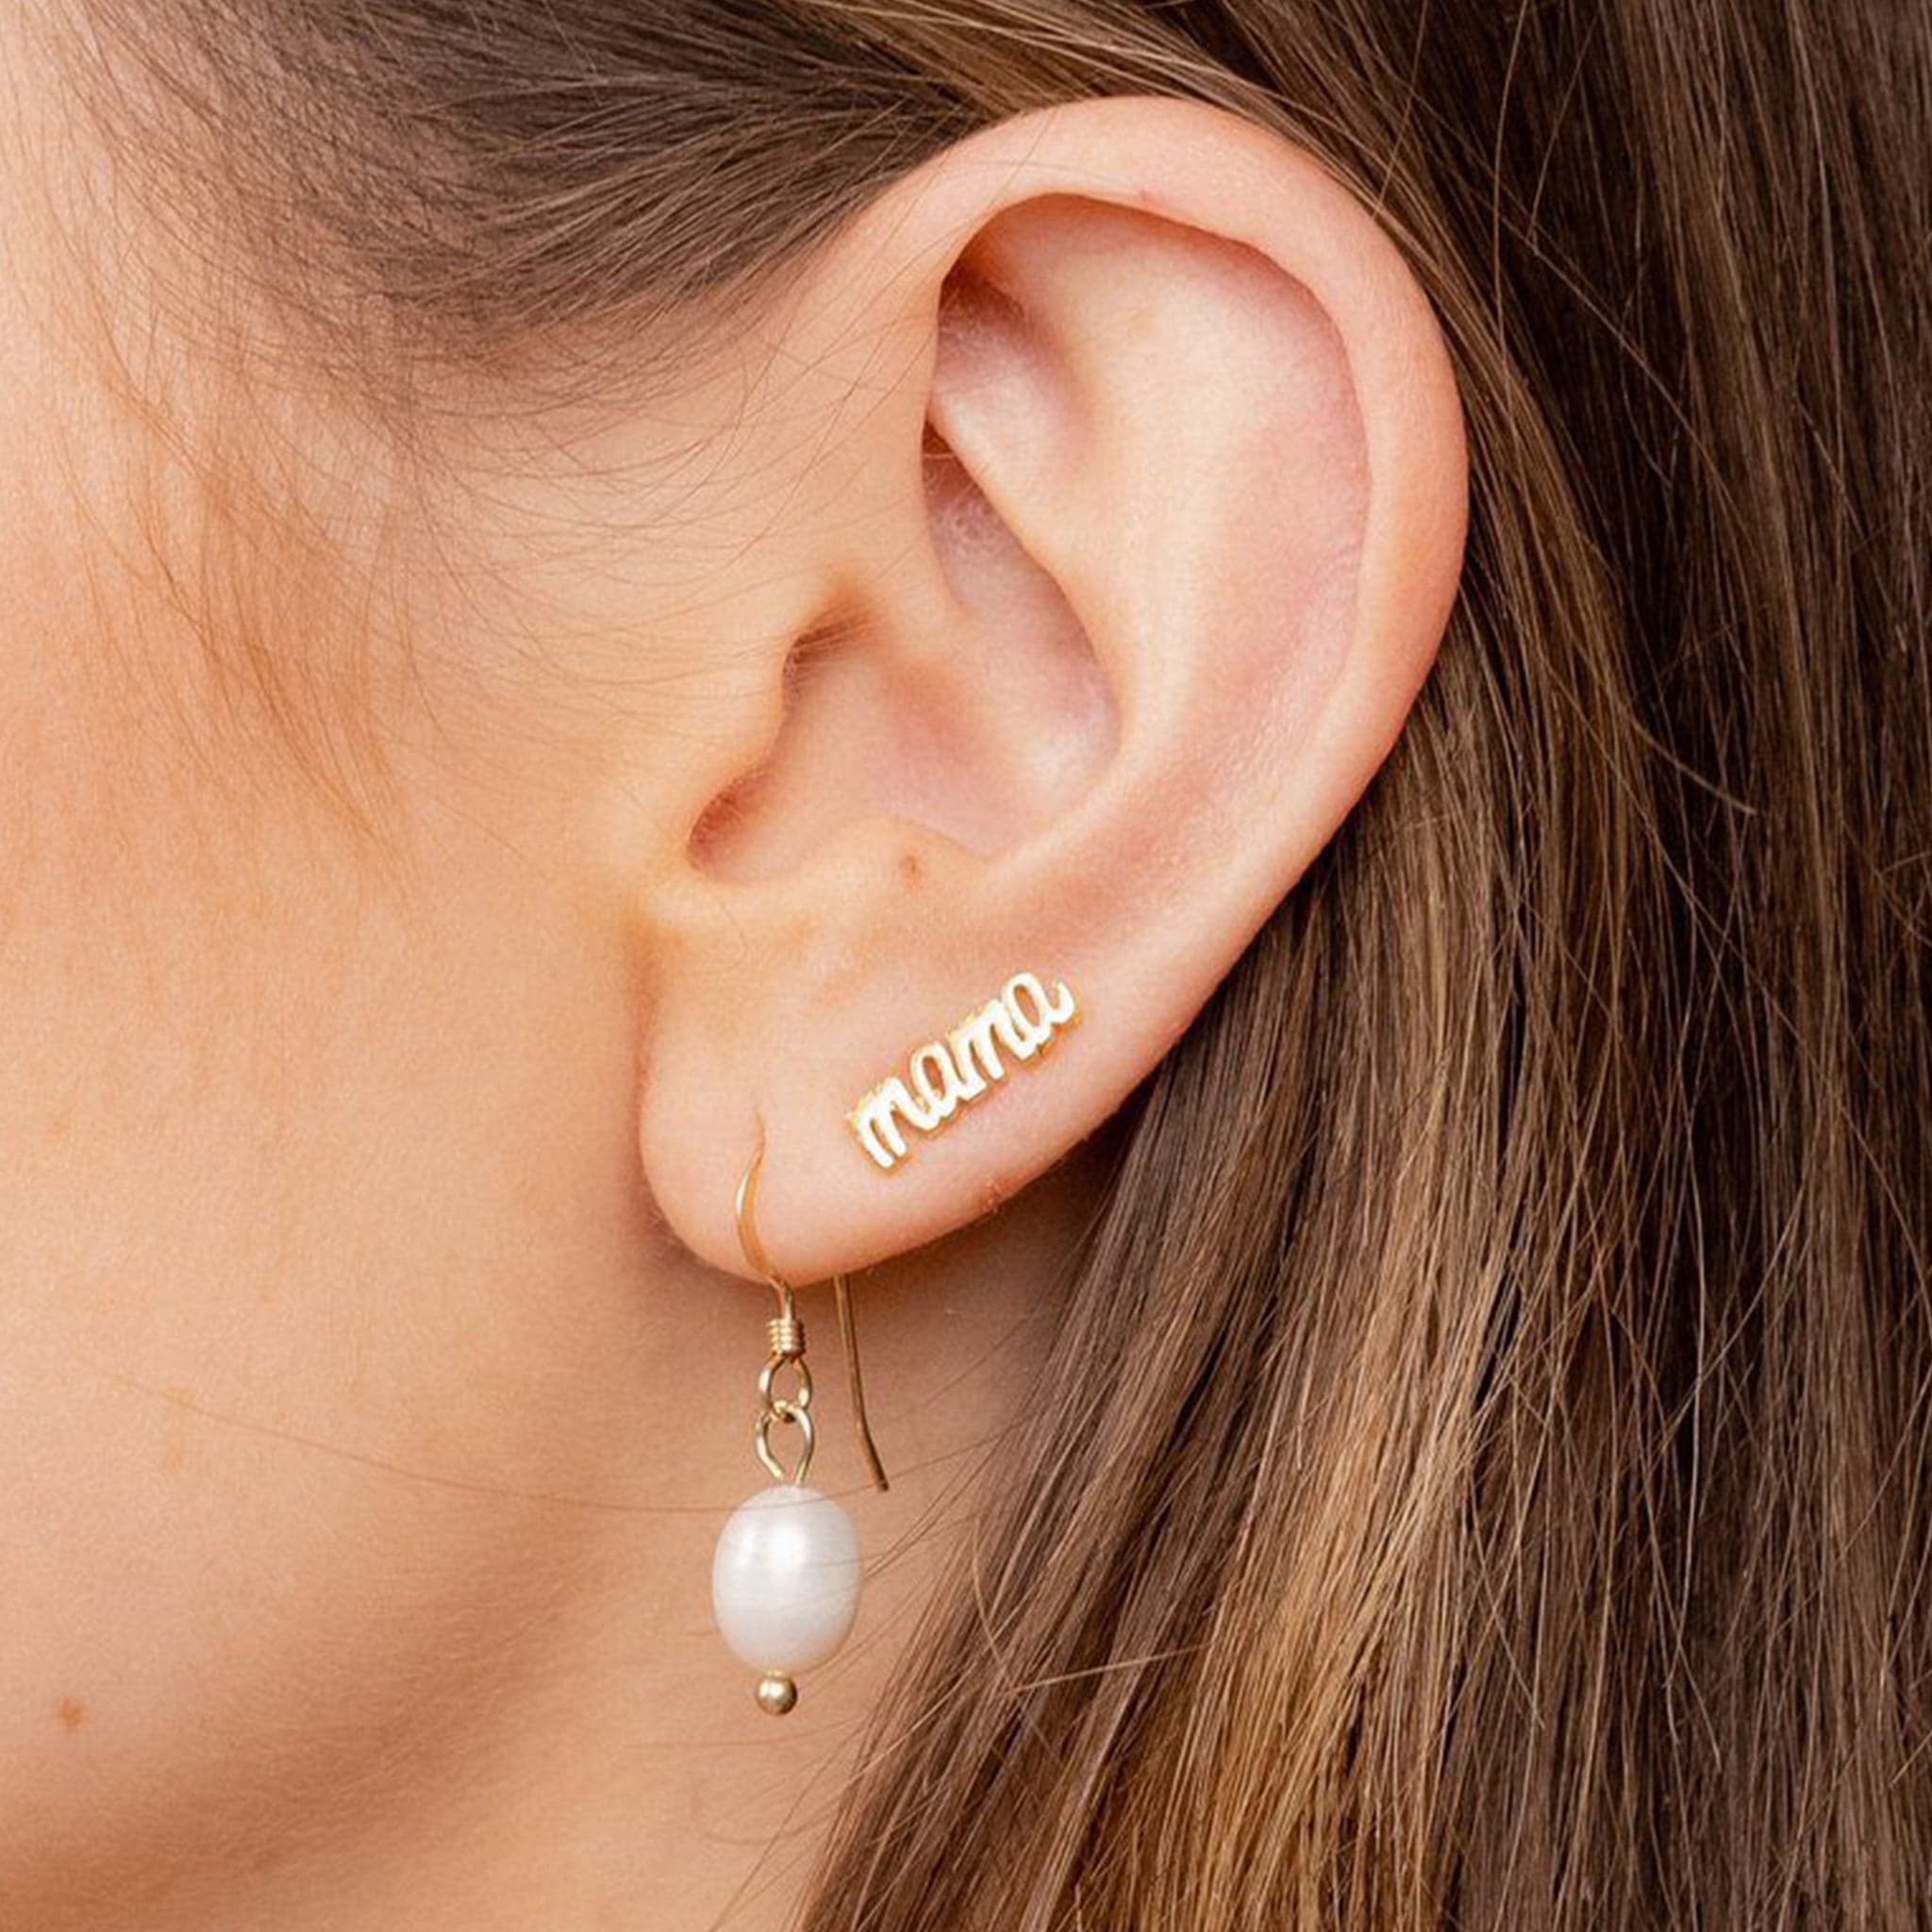 A model's ear wearing dainty gold stud earrings that say "mama".